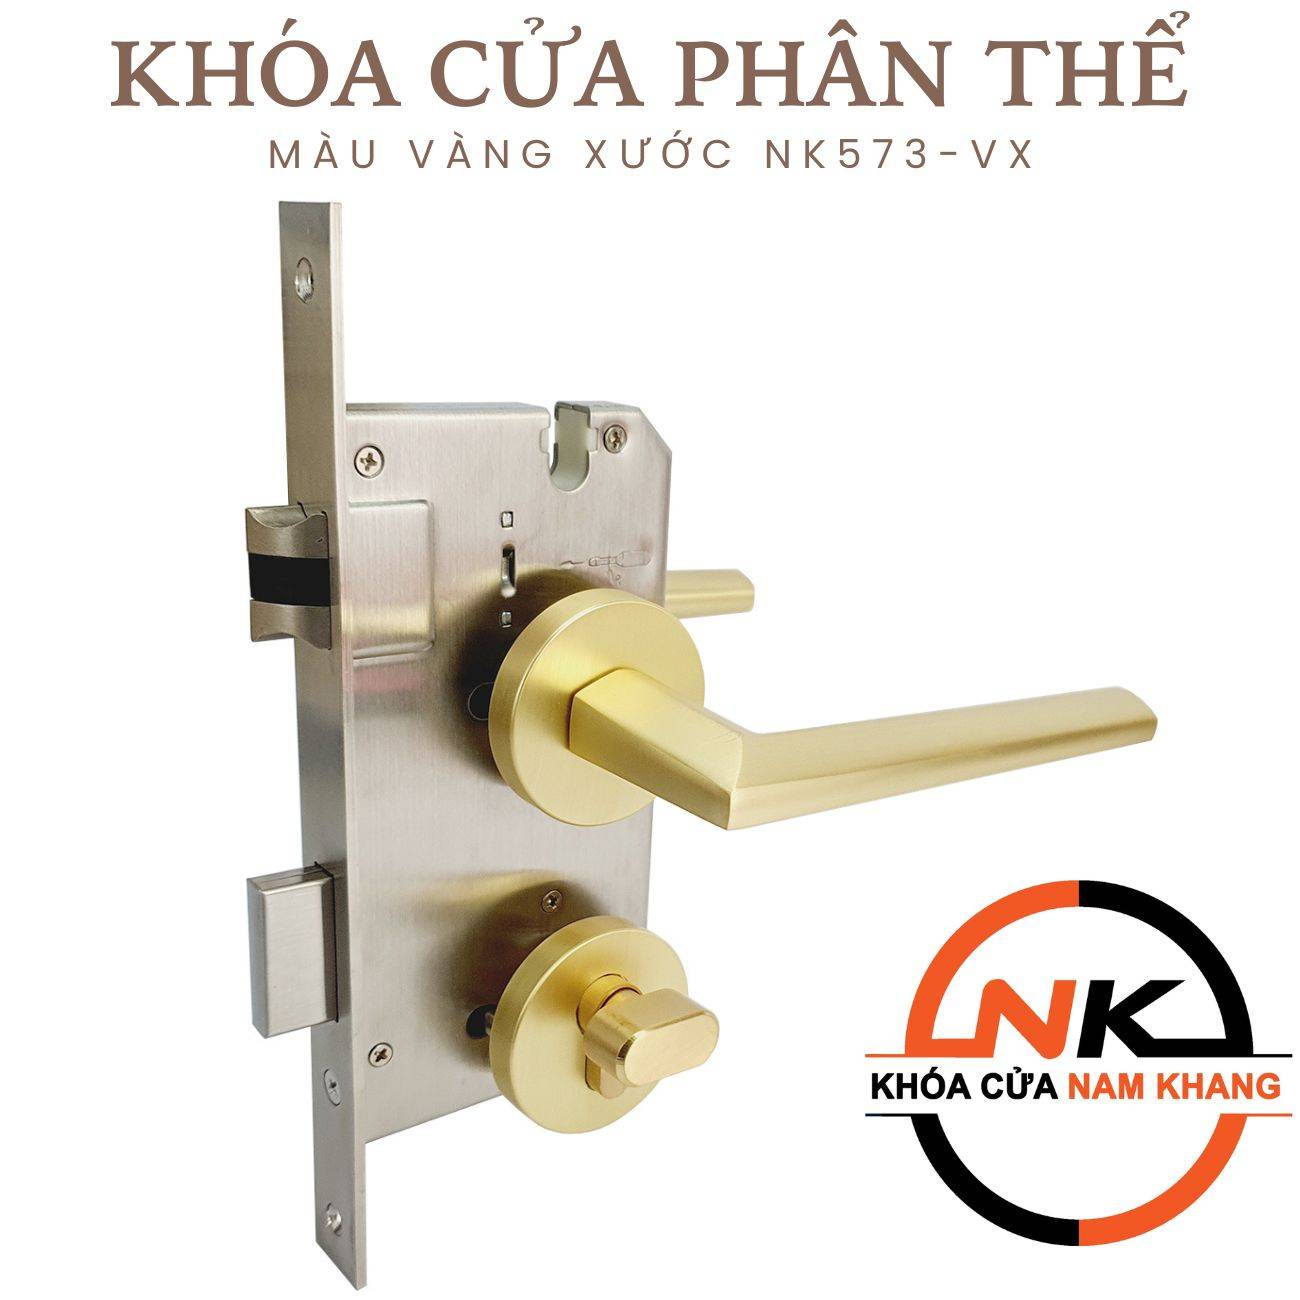 Khóa cửa phân thể hiện đại màu vàng xước NK573-VX | F-Home NamKhang